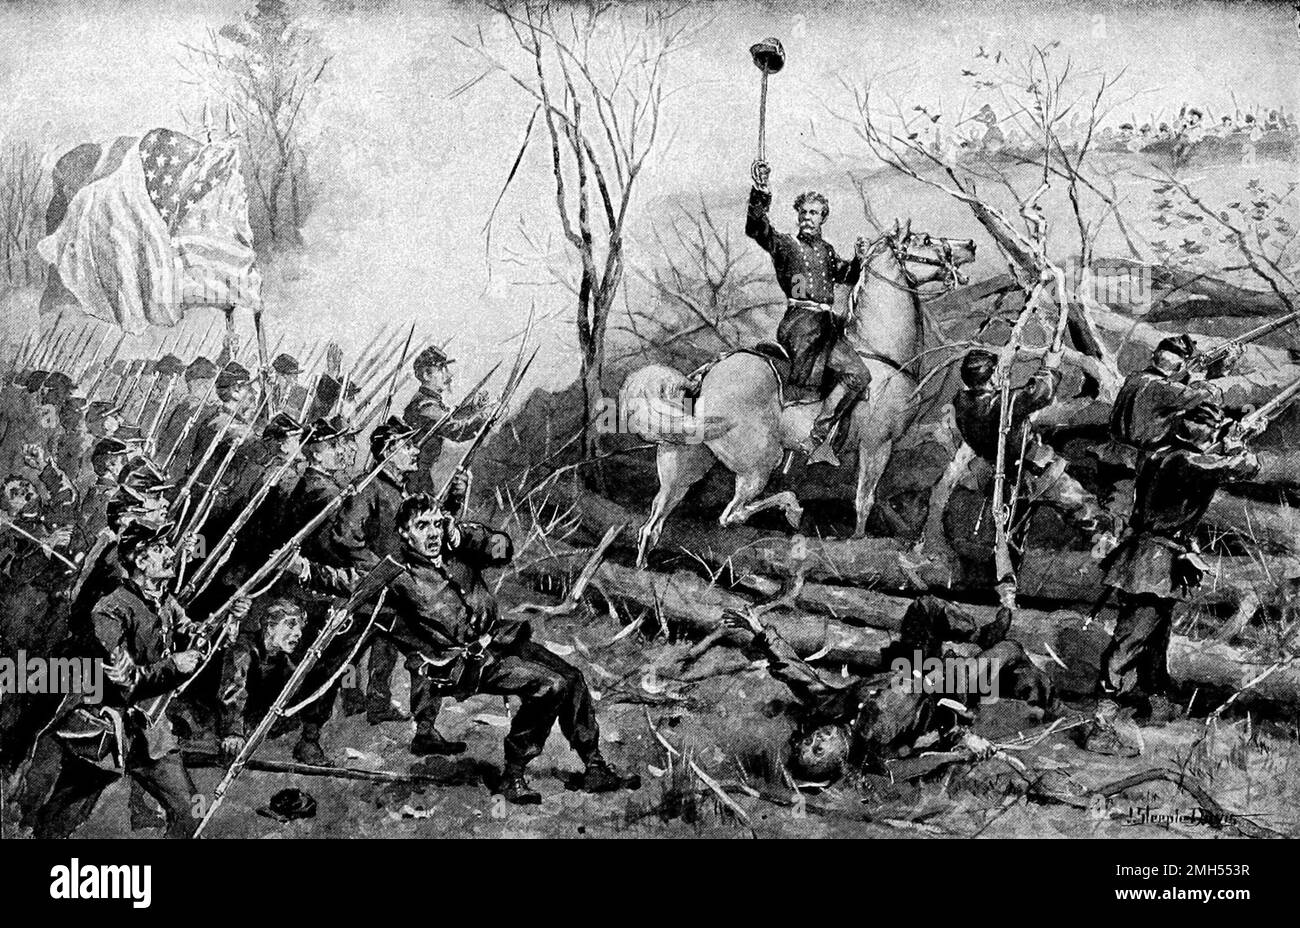 La Batalla de Fort Donelson fue una batalla en la Guerra Civil Americana que se libró del 11 al 12th de febrero de 1862 en Kentucky. Fue un ataque anfibio unionista al Fuerte Donelson bajo el mando de Ulysses Grant, y fue una victoria unionista cuando el fuerte fue capturado. La imagen muestra al general Charles Smith a caballo liderando sus tropas. Foto de stock